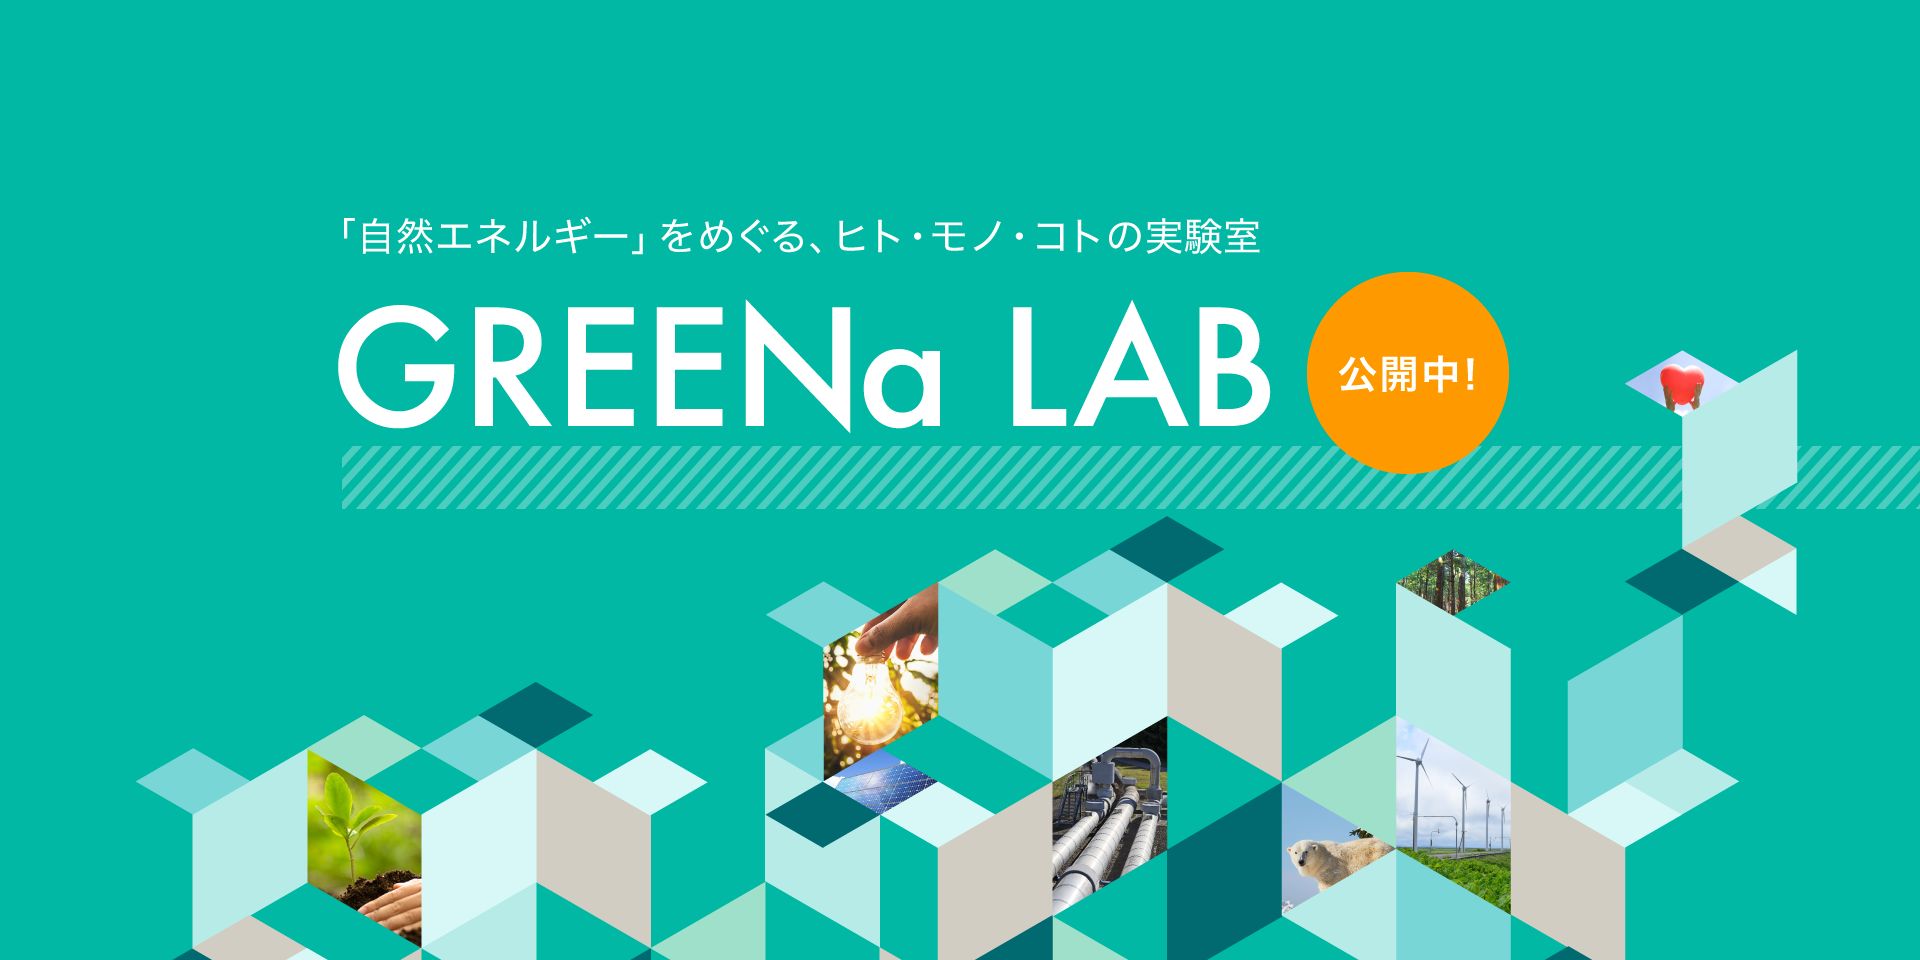 自然エネルギーをめぐるヒト、モノ、コトの実験室。GREENa LAB